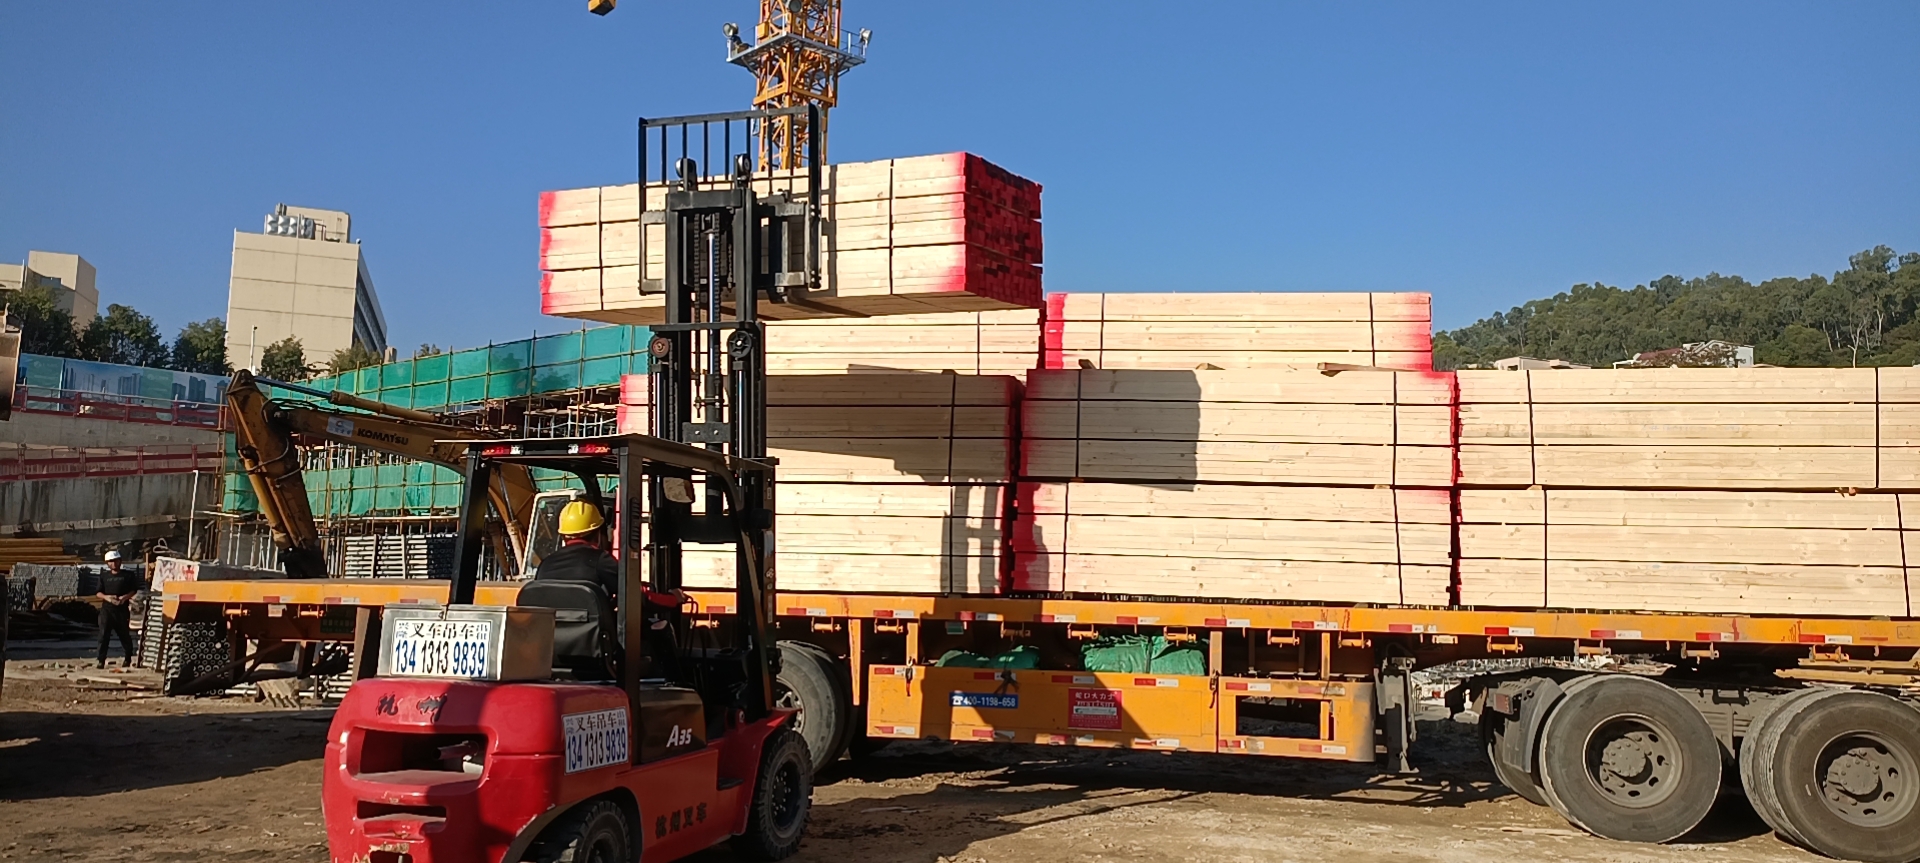 工地建筑木方工地建筑木方   辐射松木方、铁杉木方  大量供应